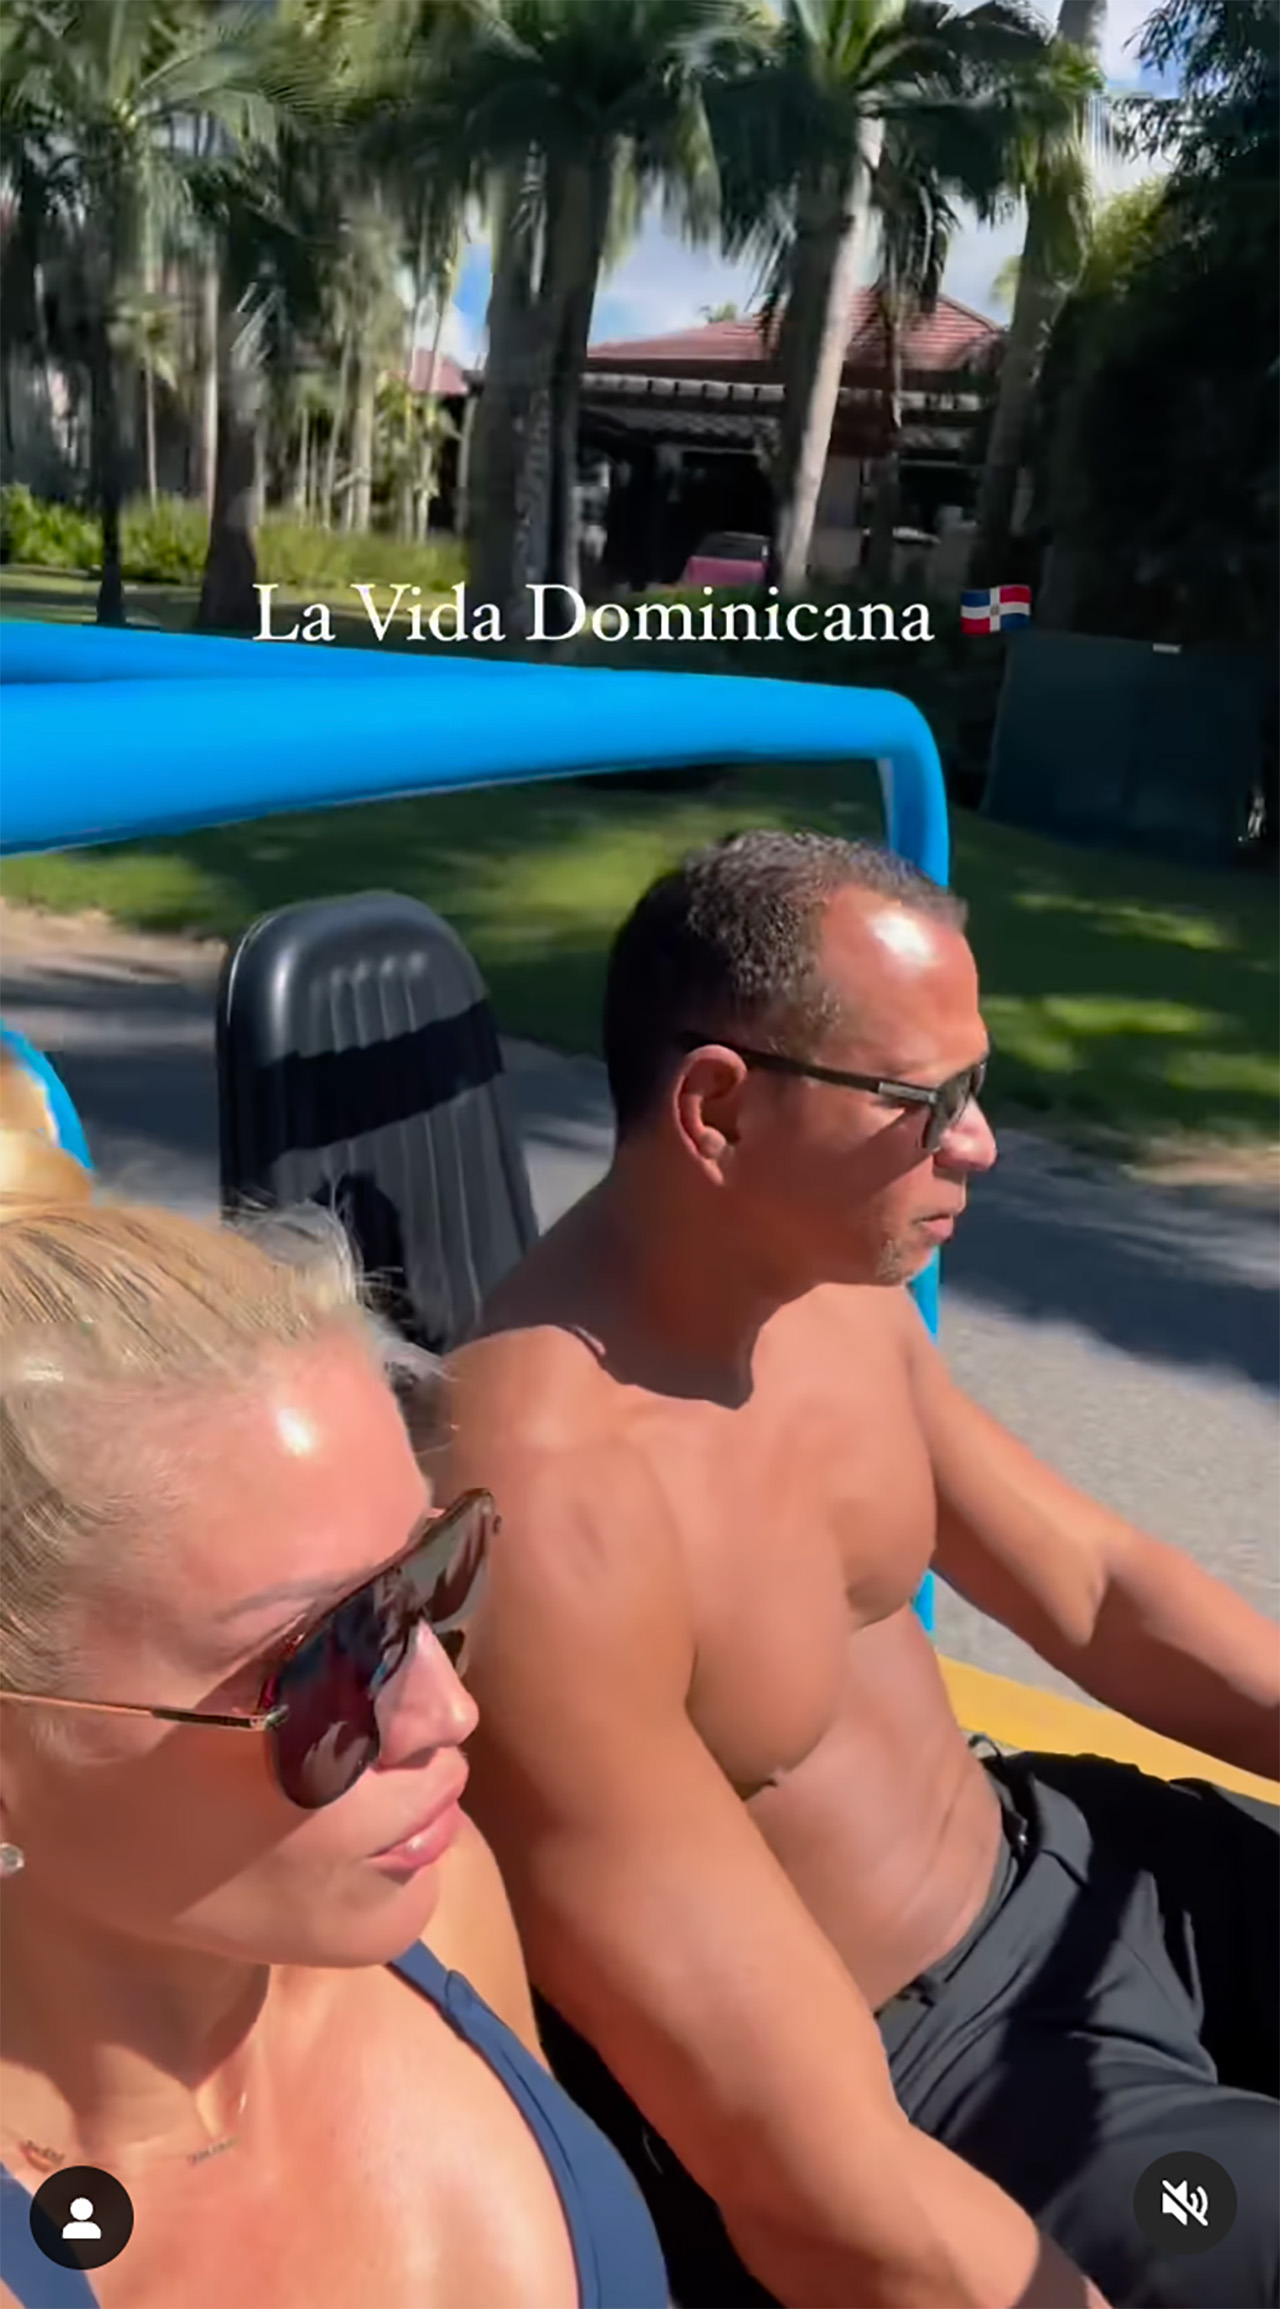 A-Rod partage une vidéo de son voyage en République Dominicaine.